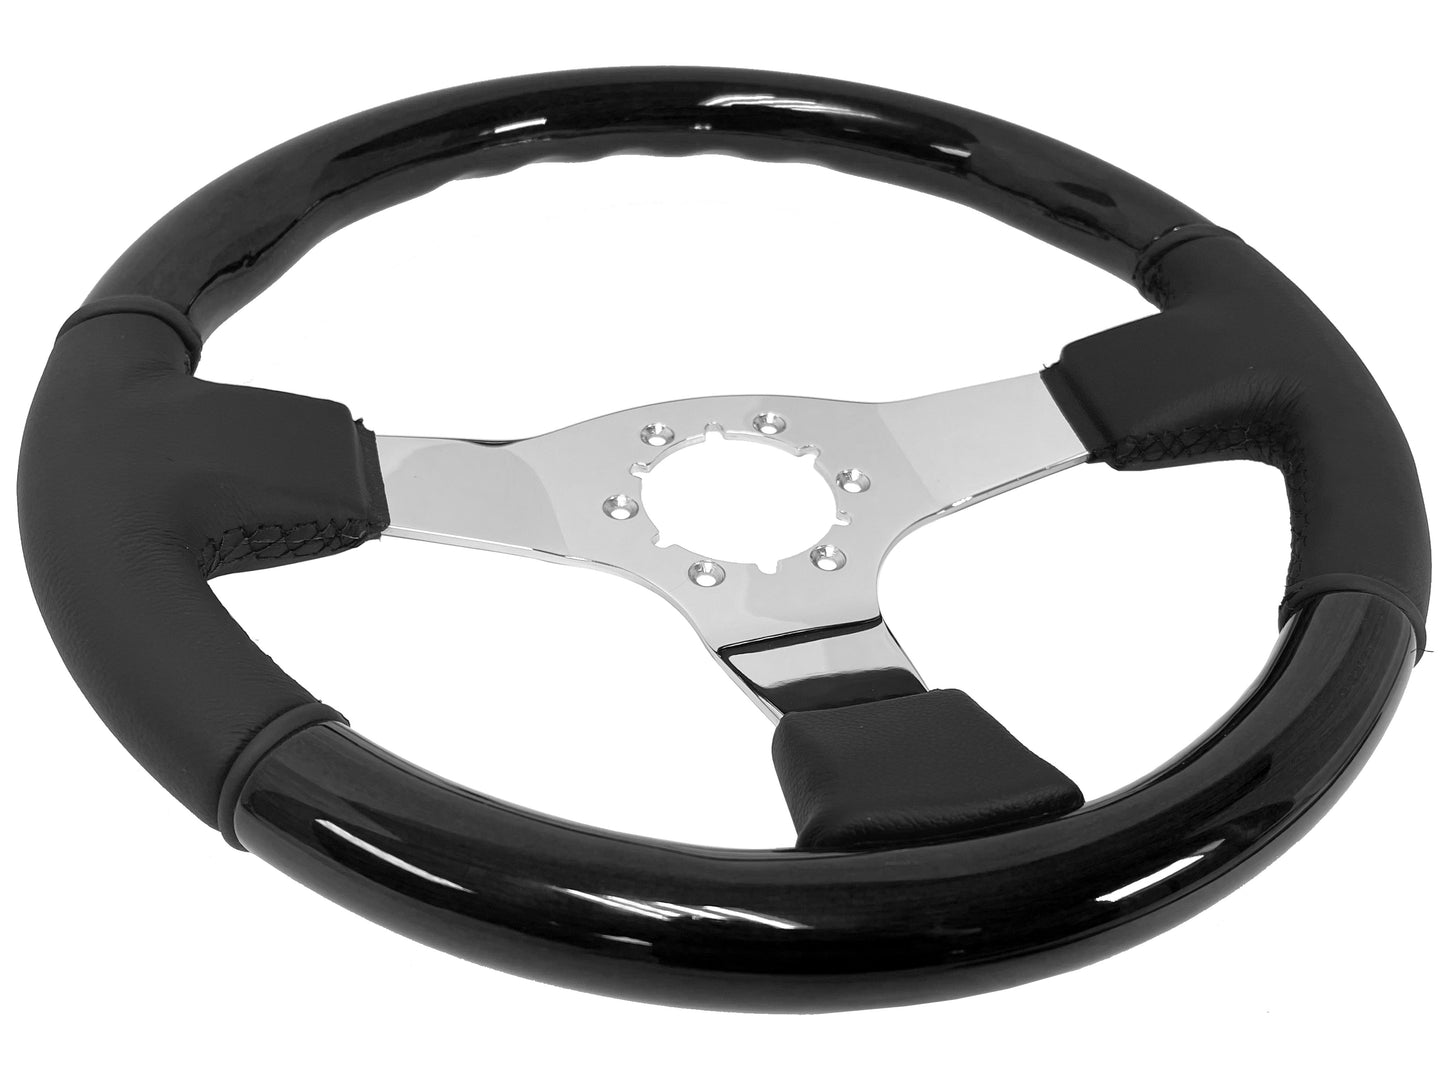 VSW 14" Black Ash Wood / Leather Steering Wheel, 6 Bolt Chrome Spokes ST3019